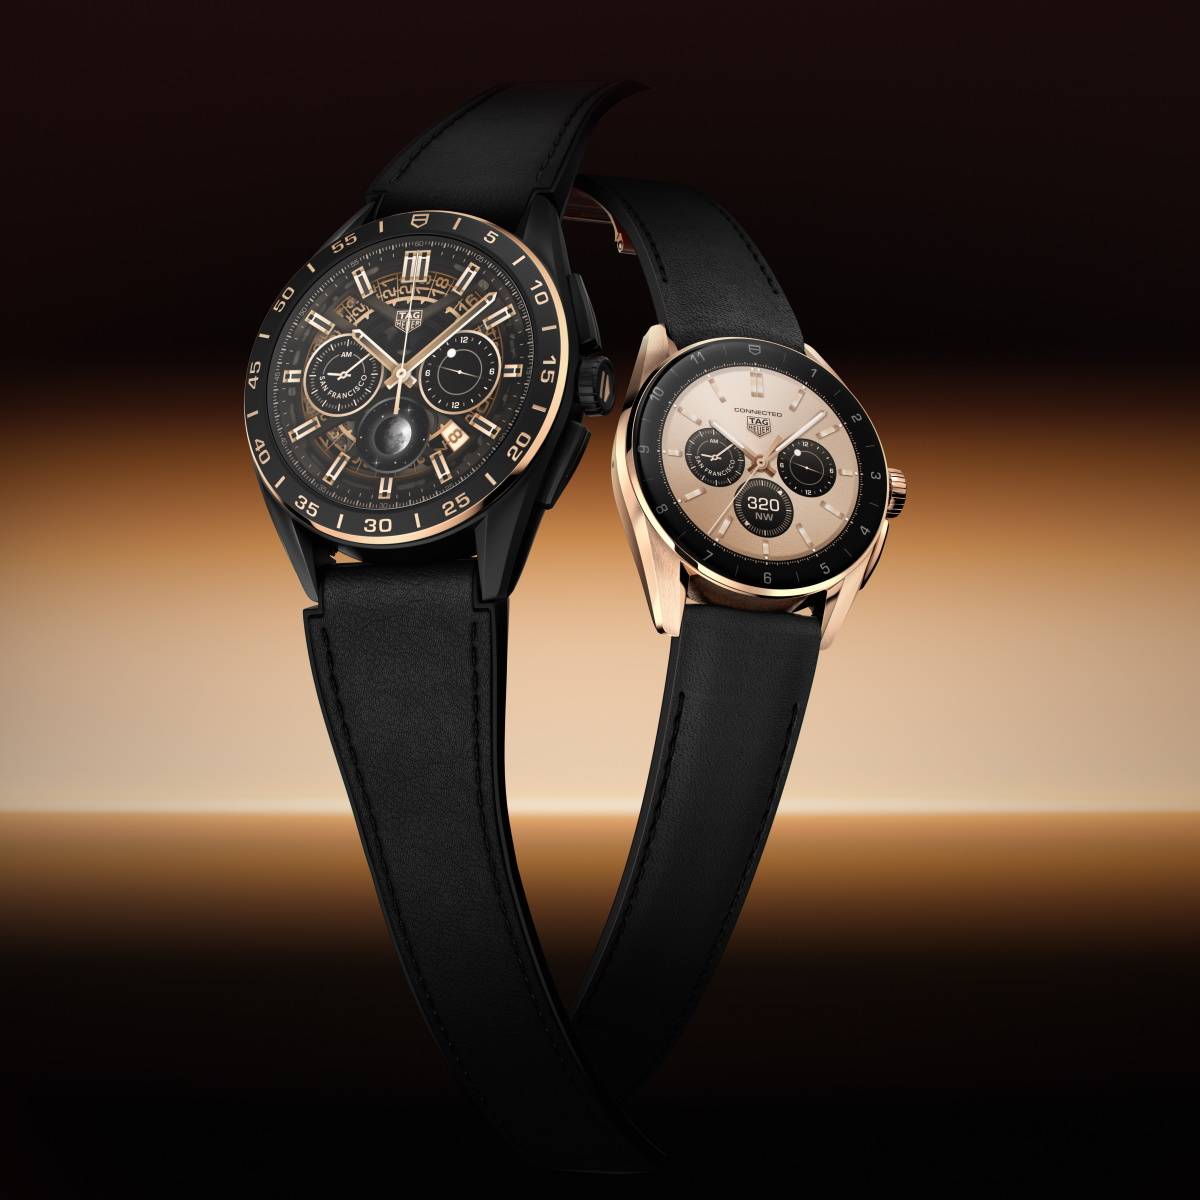 Zegarki z kolekcji Connected marki TAG Heuer. Najnowsza generacja zegarków TAG Heuer Connected harmonijnie łączy elegancję z luksusem tradycyjnego zegarka.